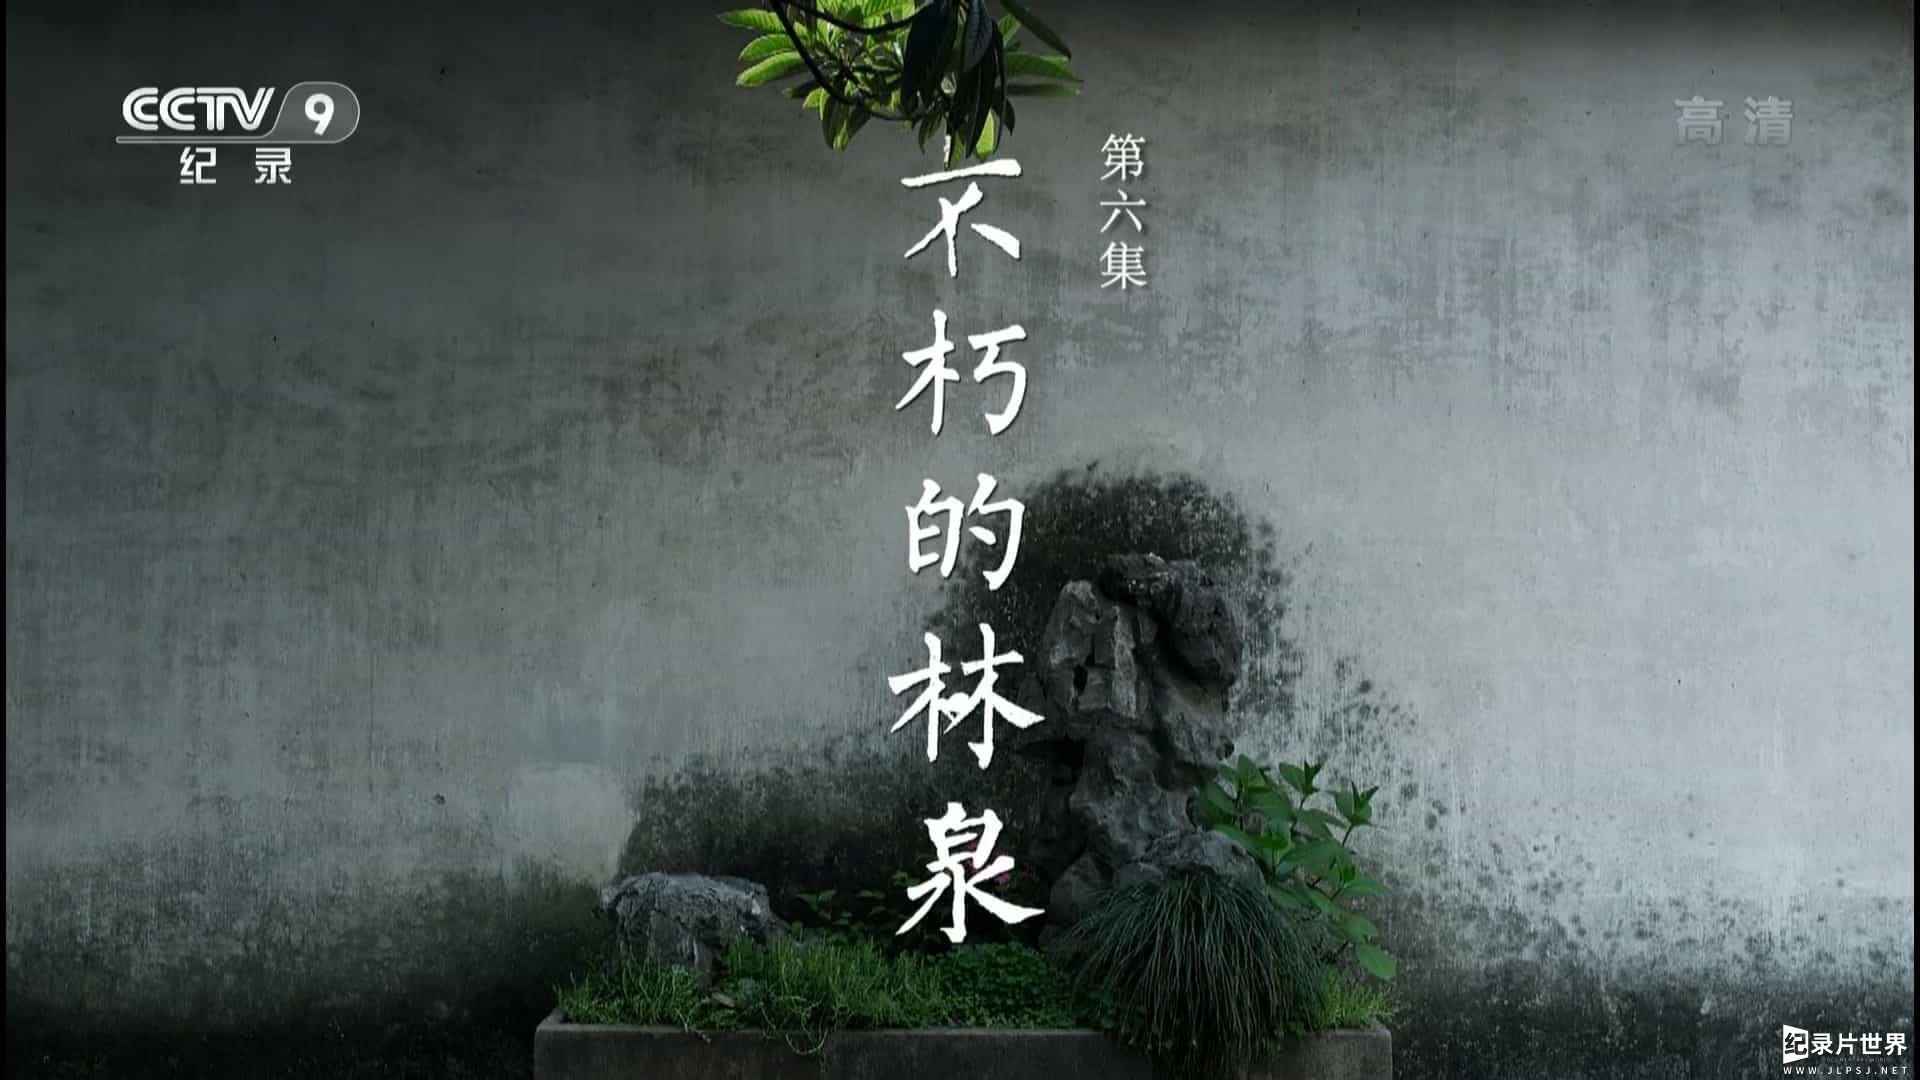 央视纪录片《园林:长城之内是花园 Chinese Garden》